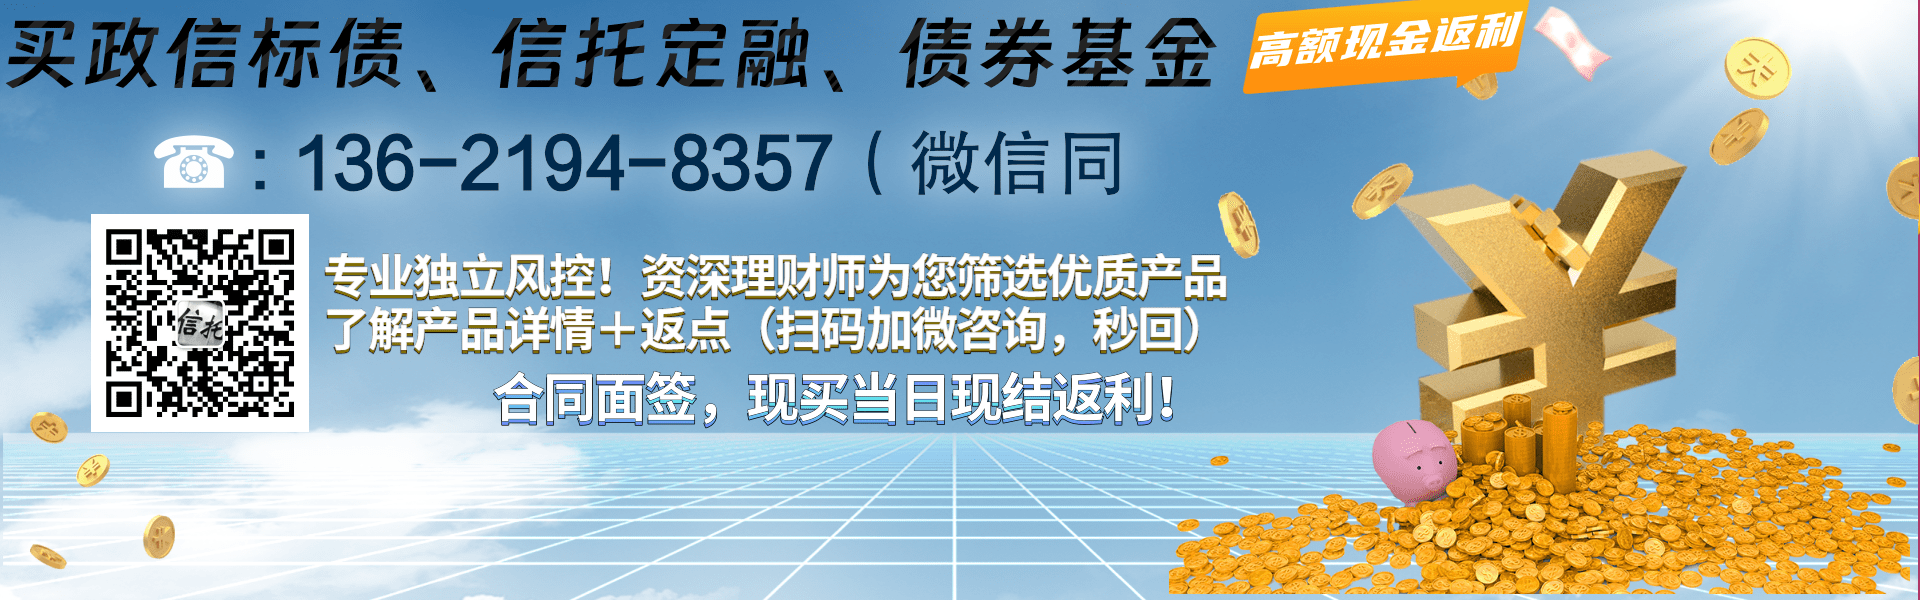 潍坊滨海旅游债权收益权政府债定融